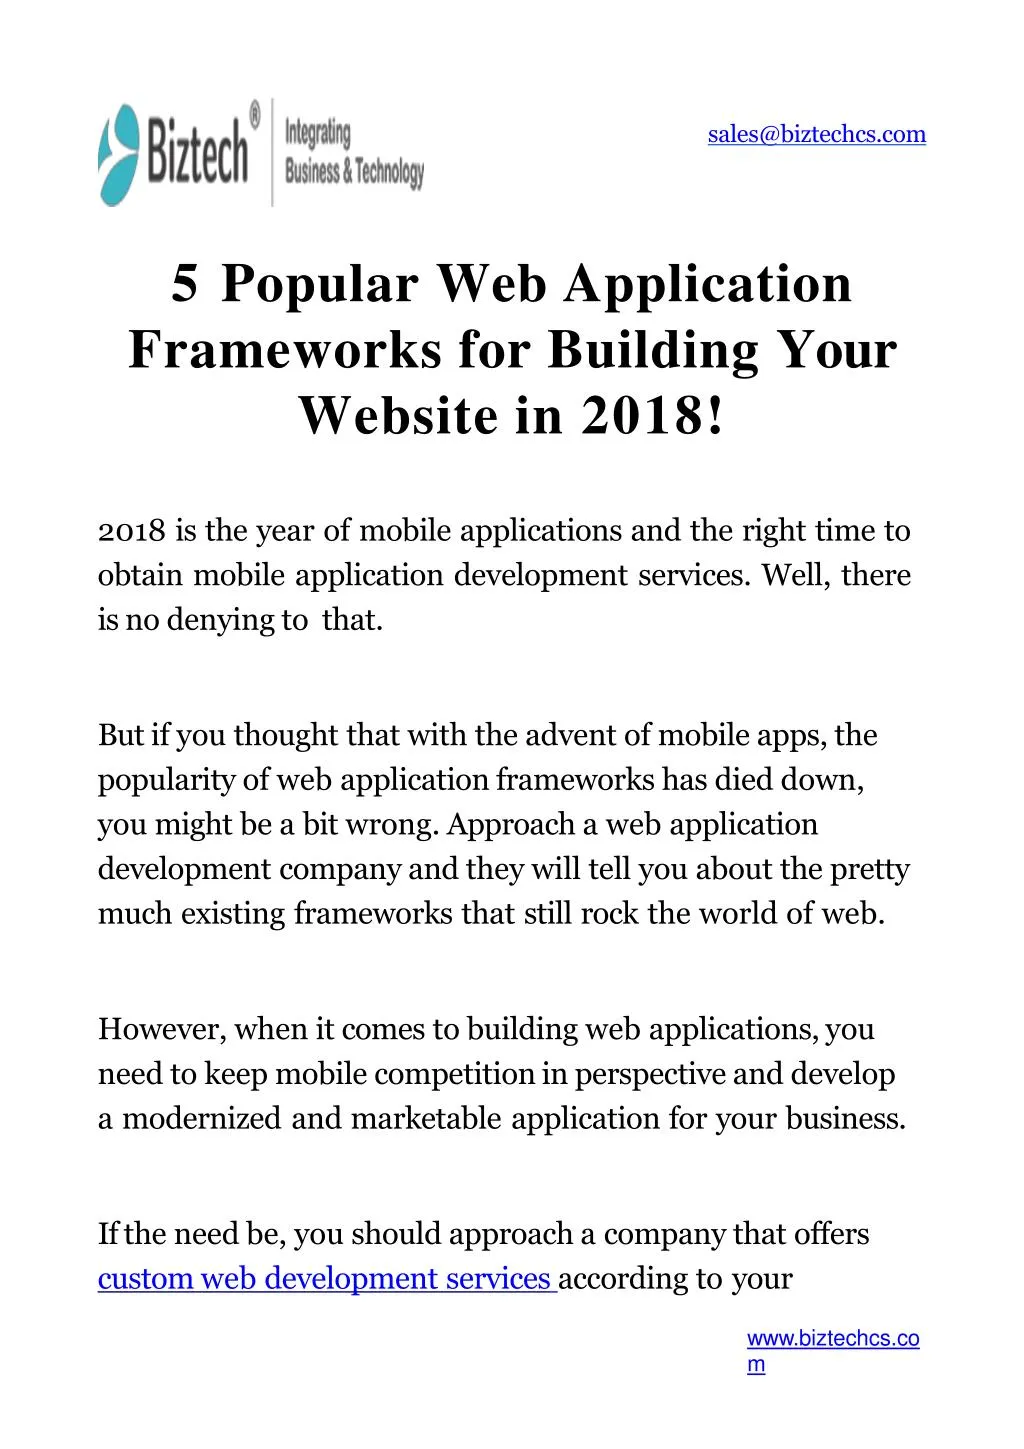 5 popular web application frameworks for building your website in 2018